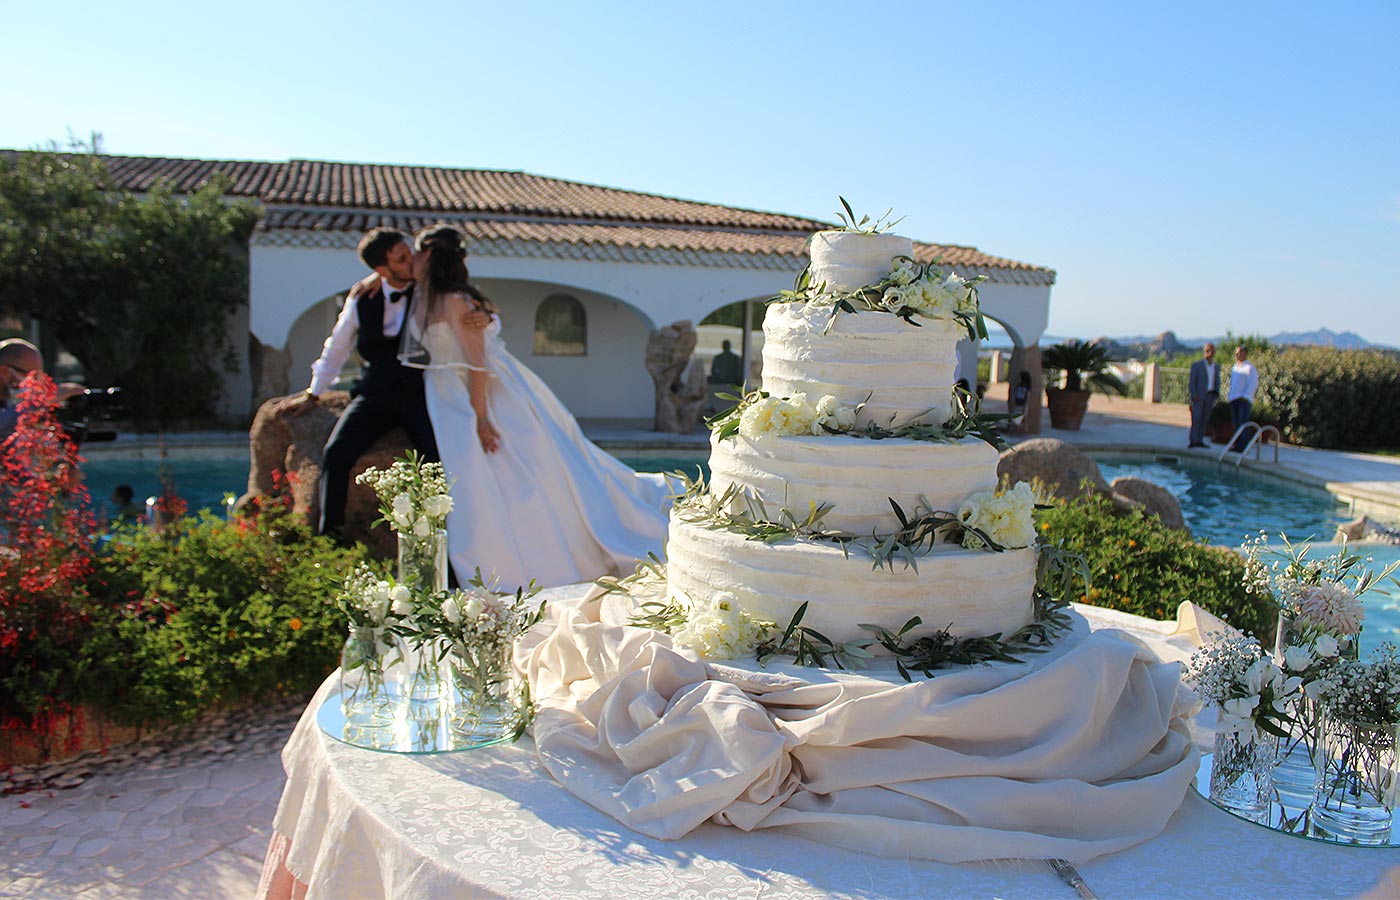 novizi sposi si baciano vicino alla torta matrimoniale a quattro piani all'Hotel Pulicinu, location per Matrimoni in Sardegna